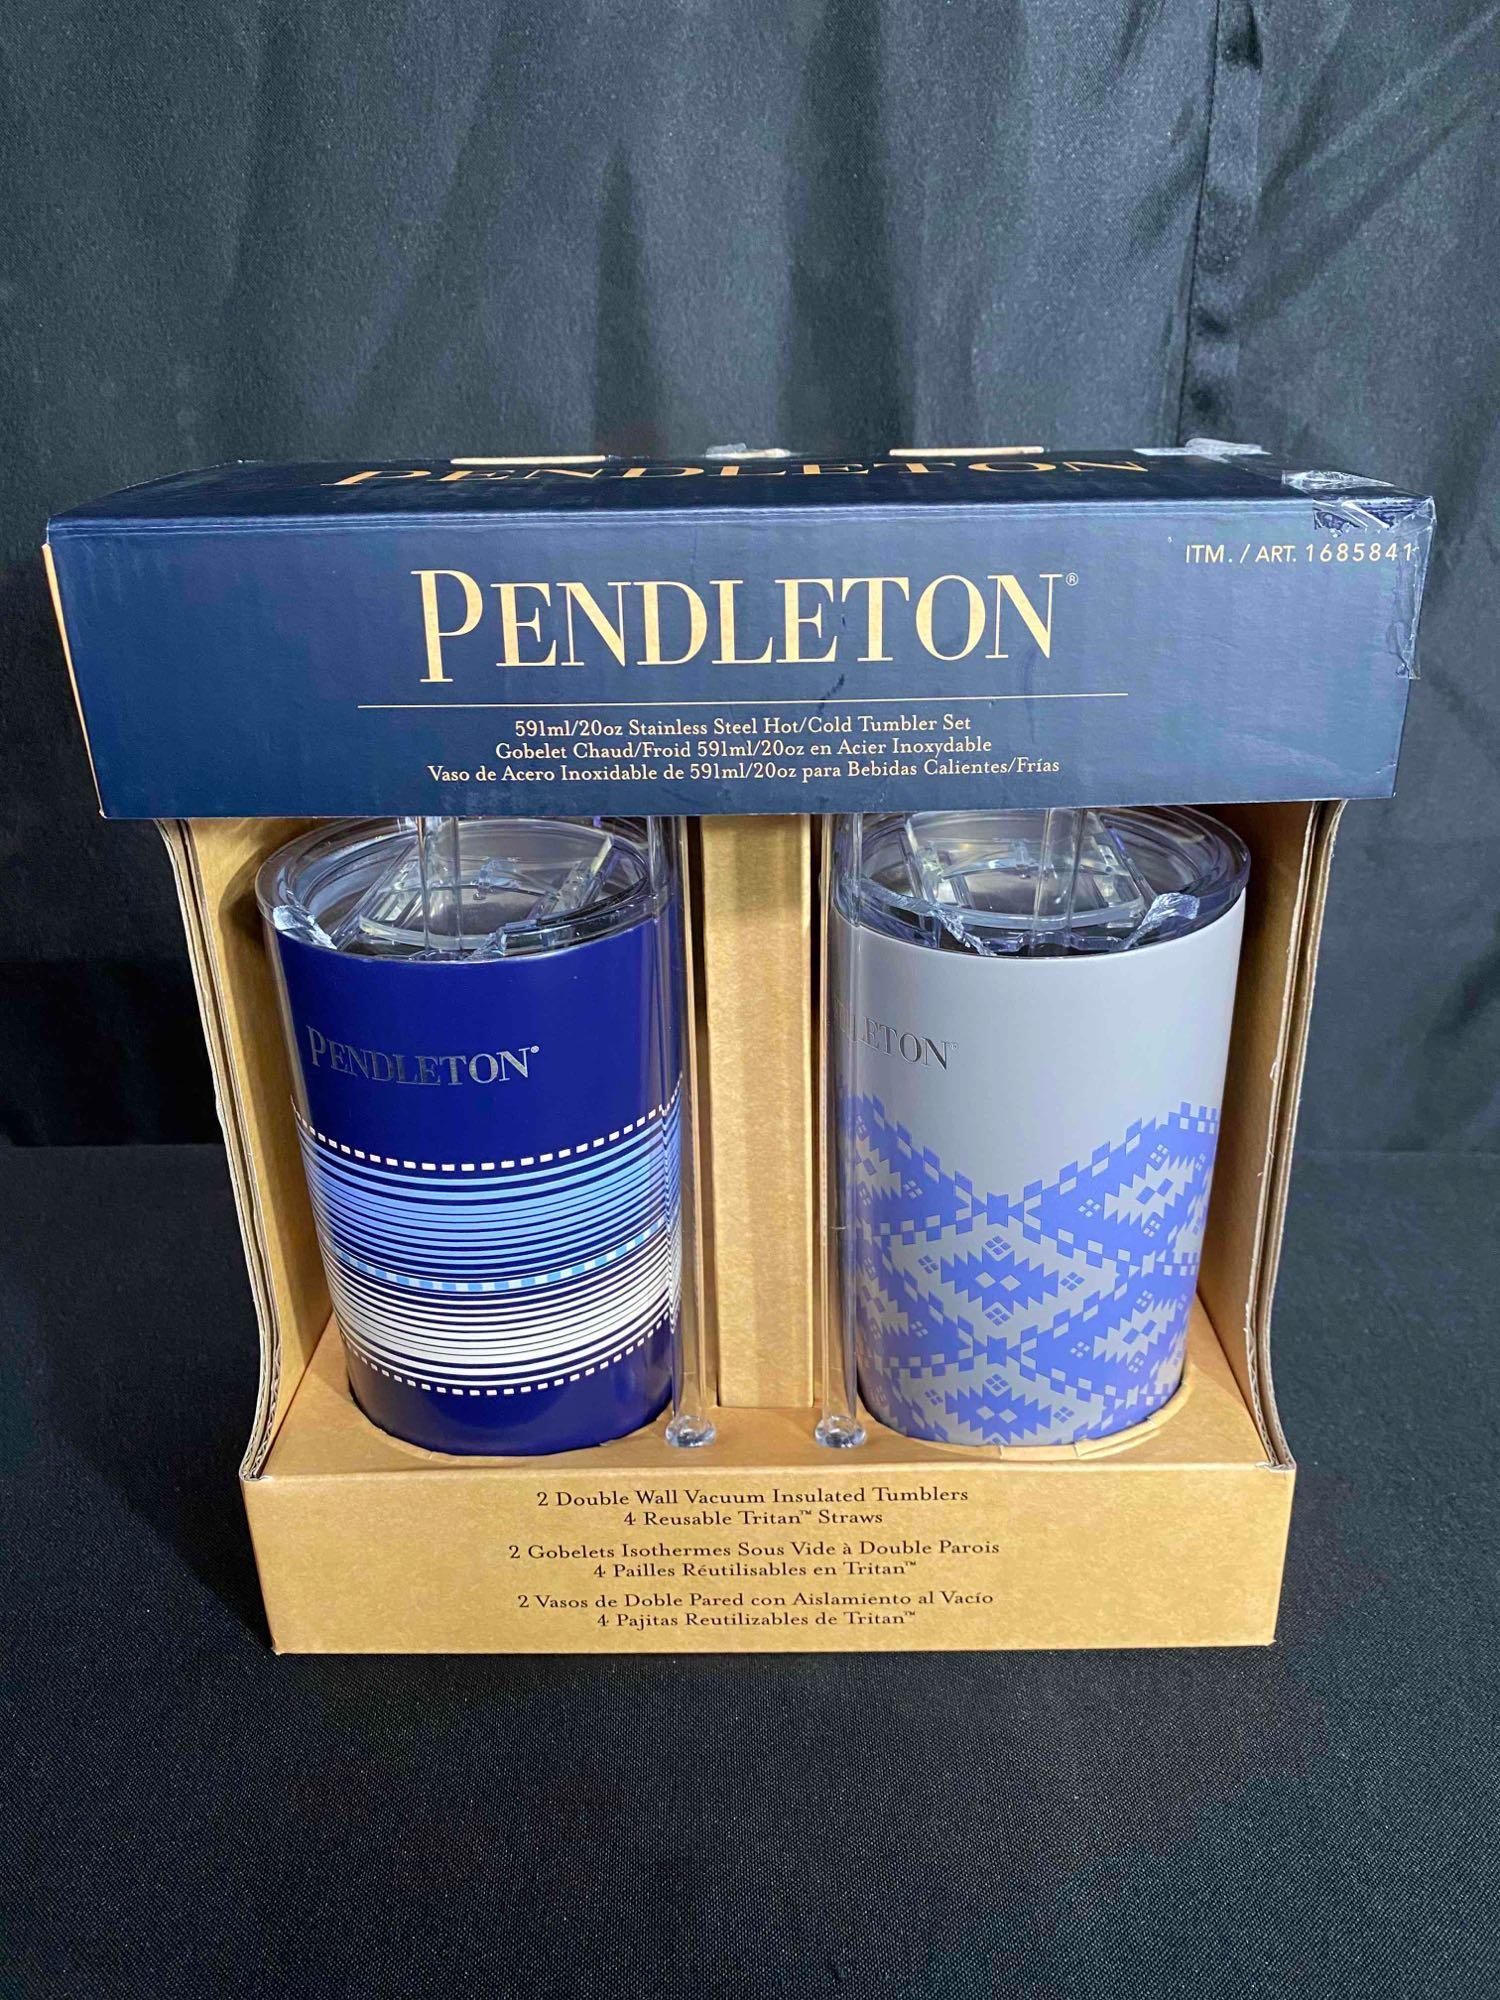 Pendleton 2 Pack of Tumblers Blue, Purple, White